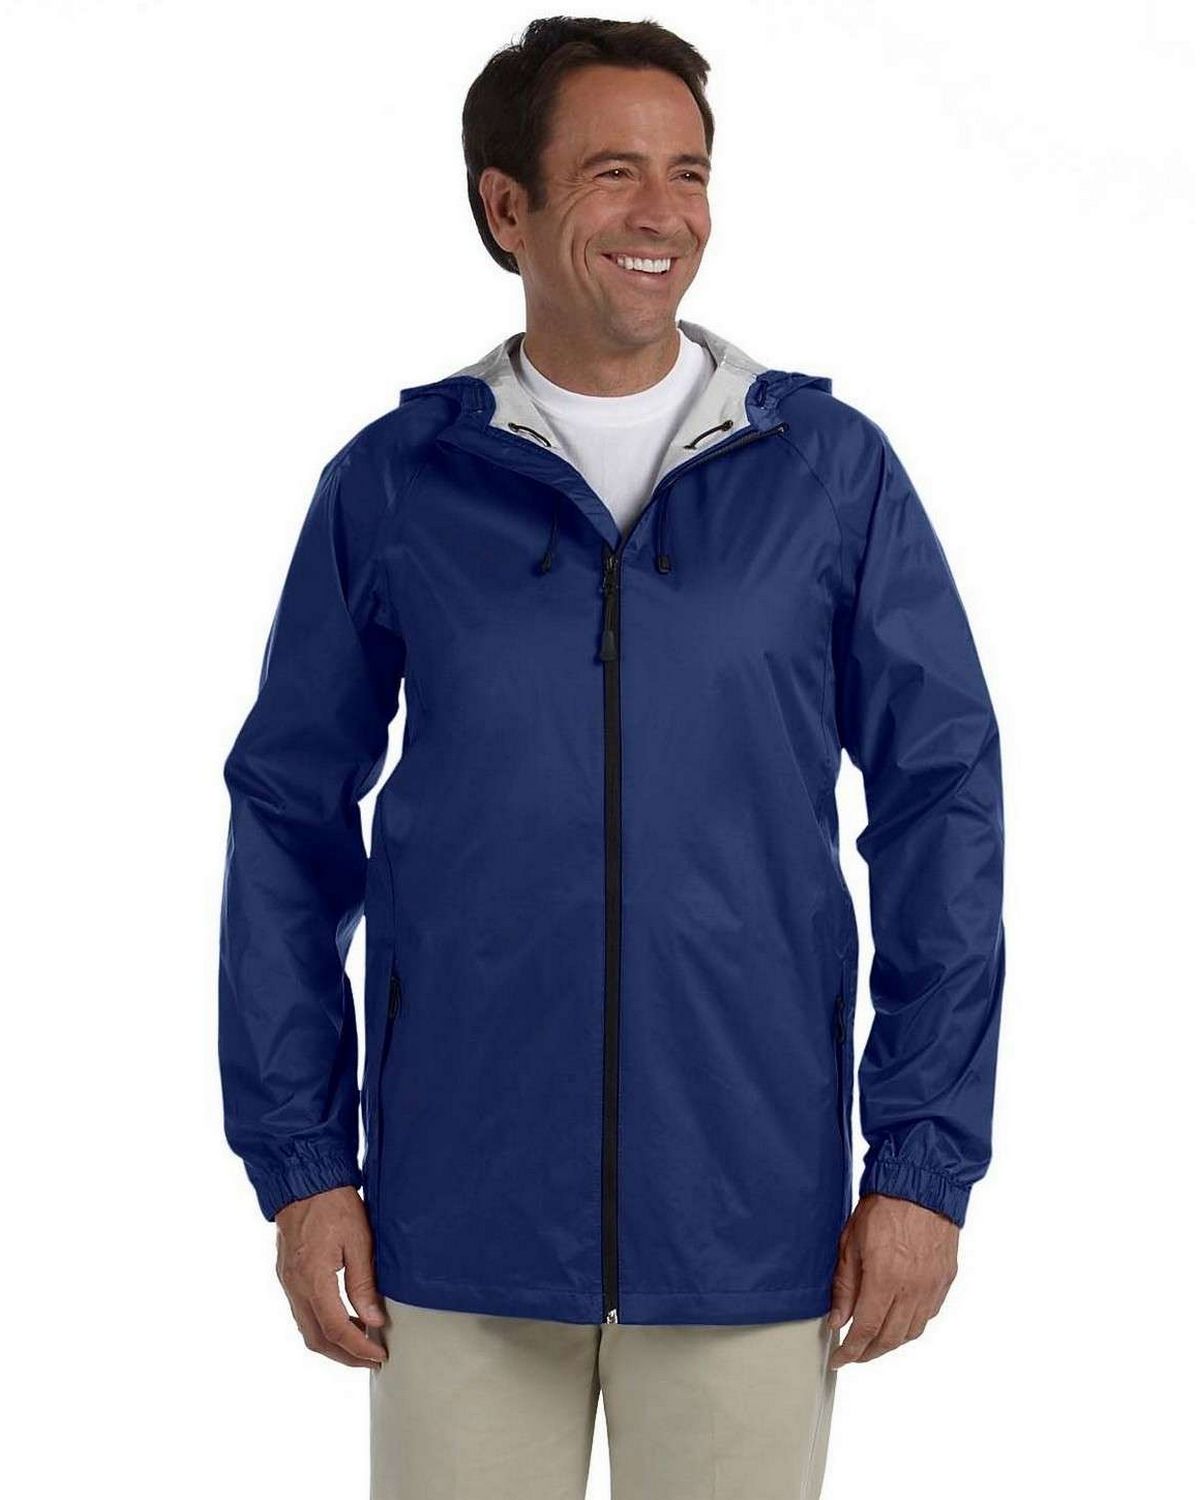 Buy Devon & Jones D756 Men's Nylon Rain Jacket